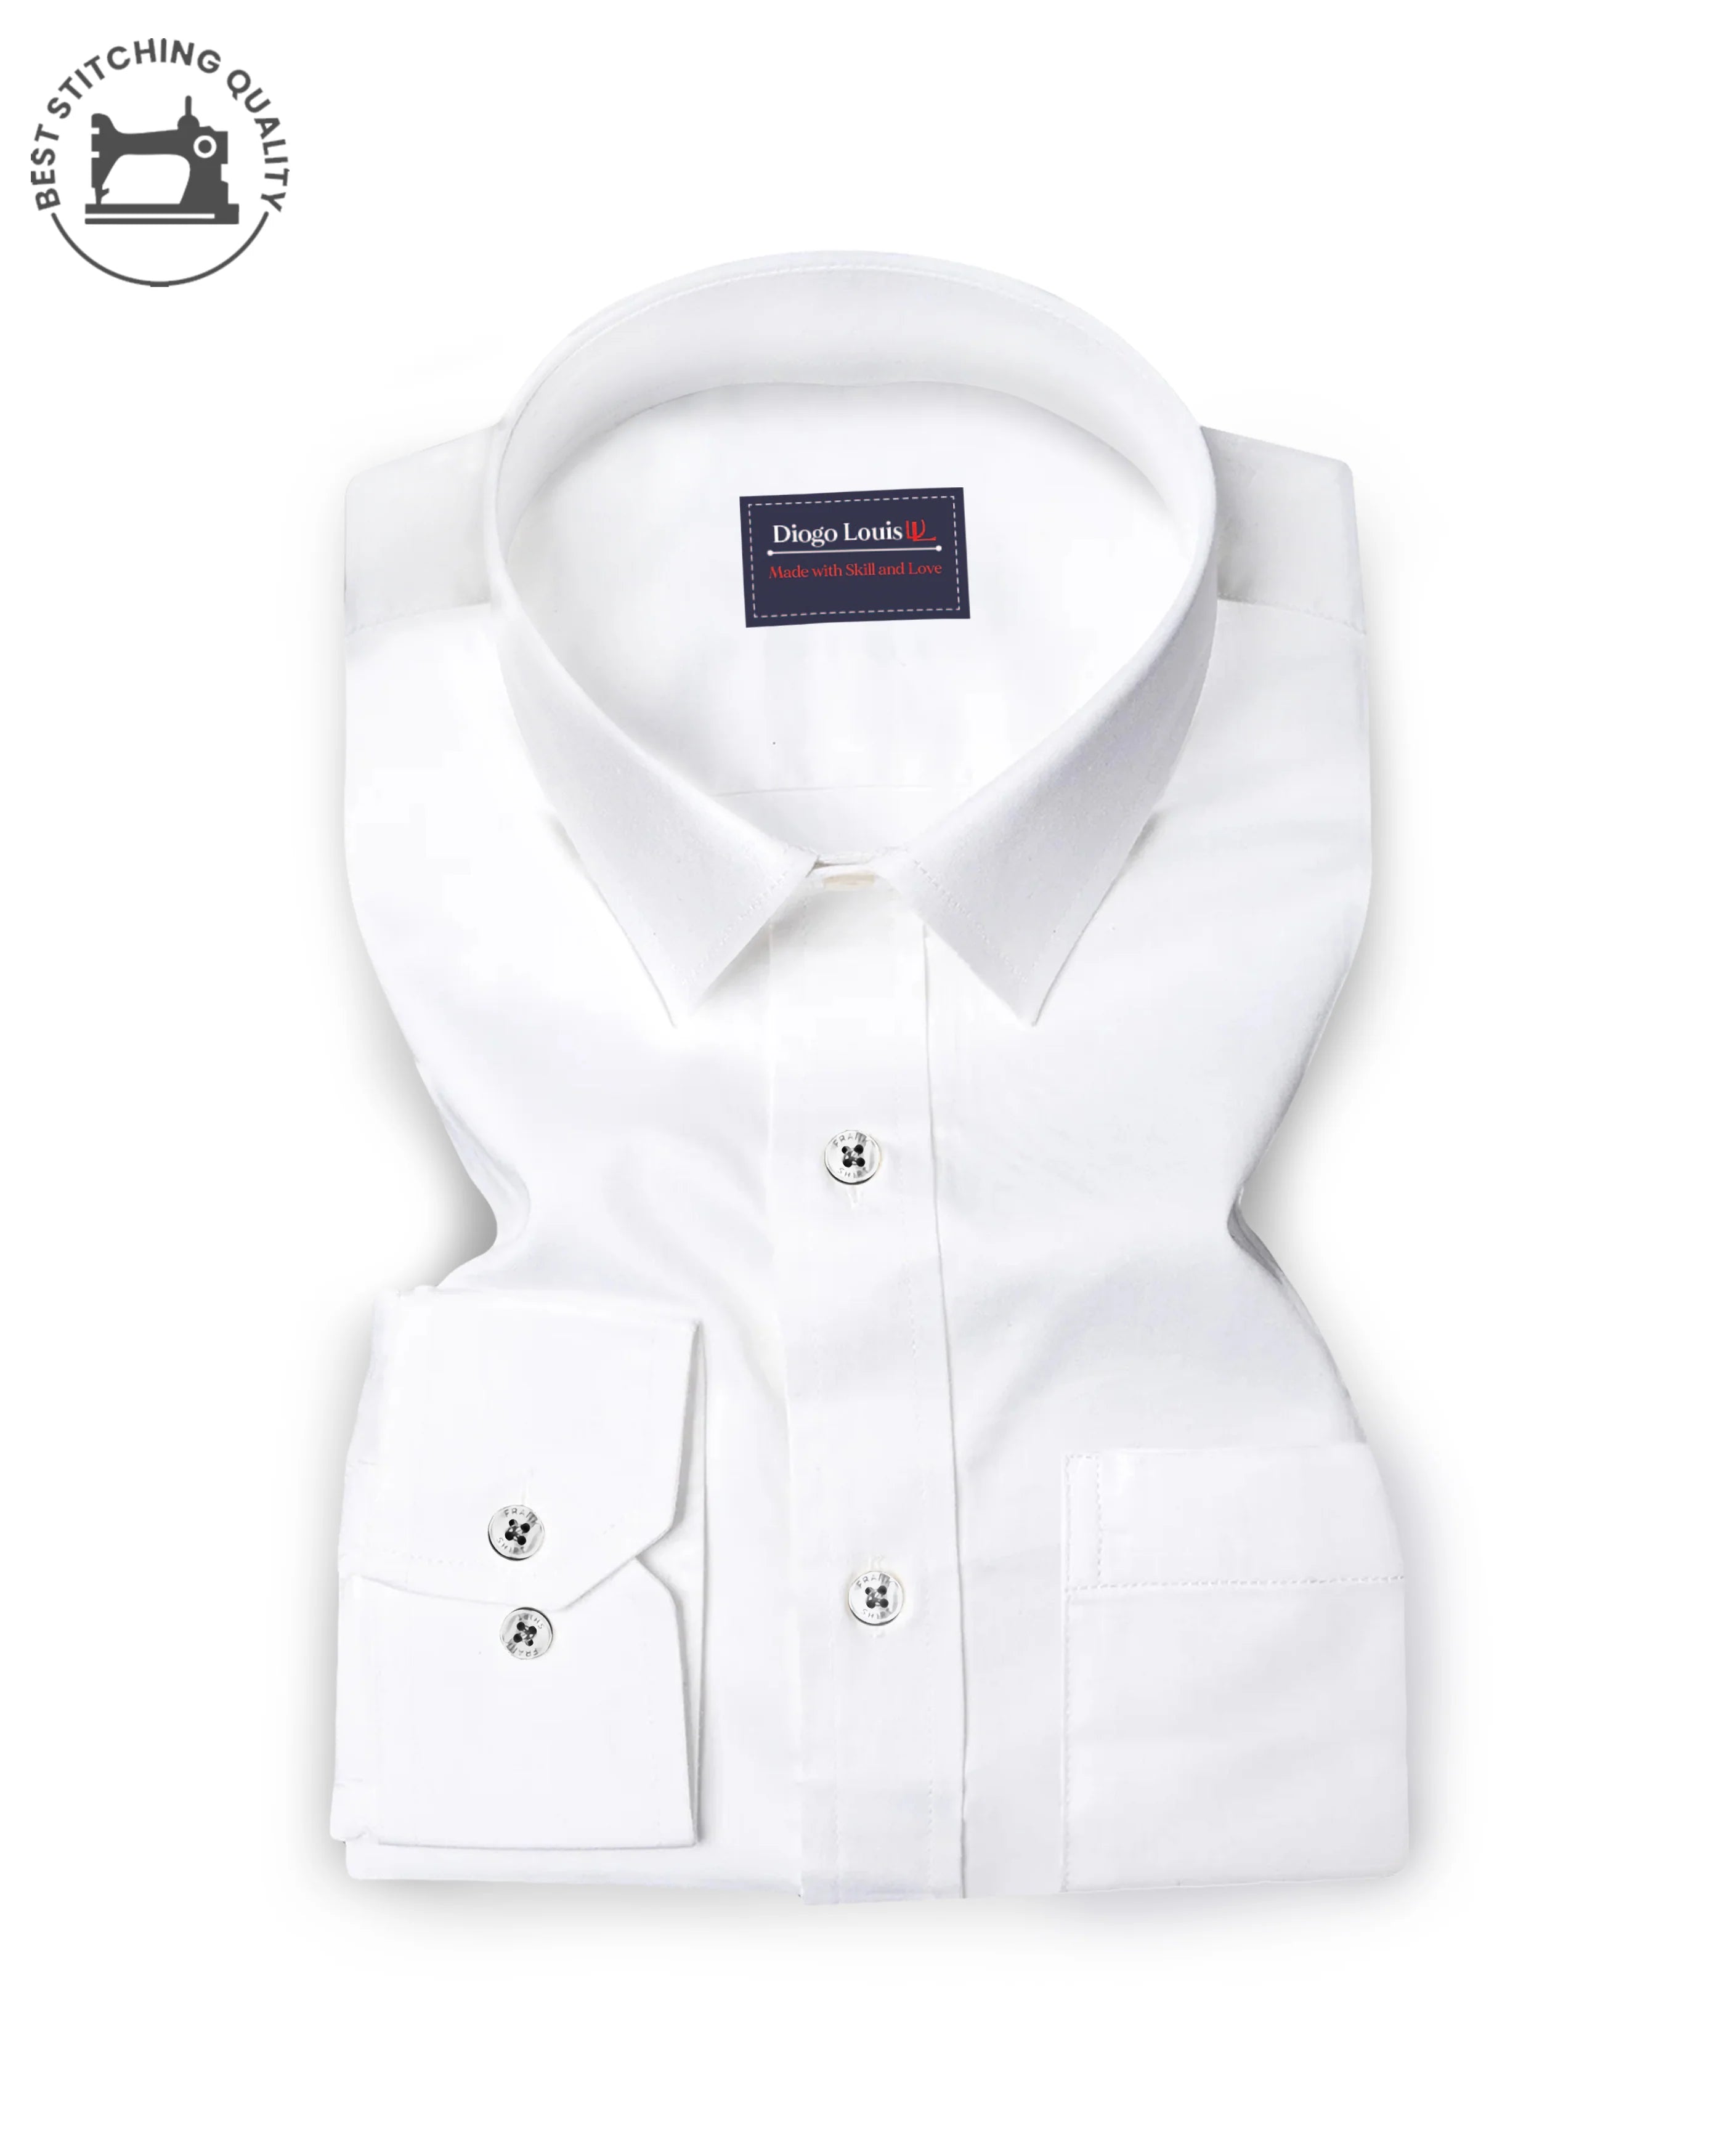 Combo of 2 plain shirts White & Light Blue Colour